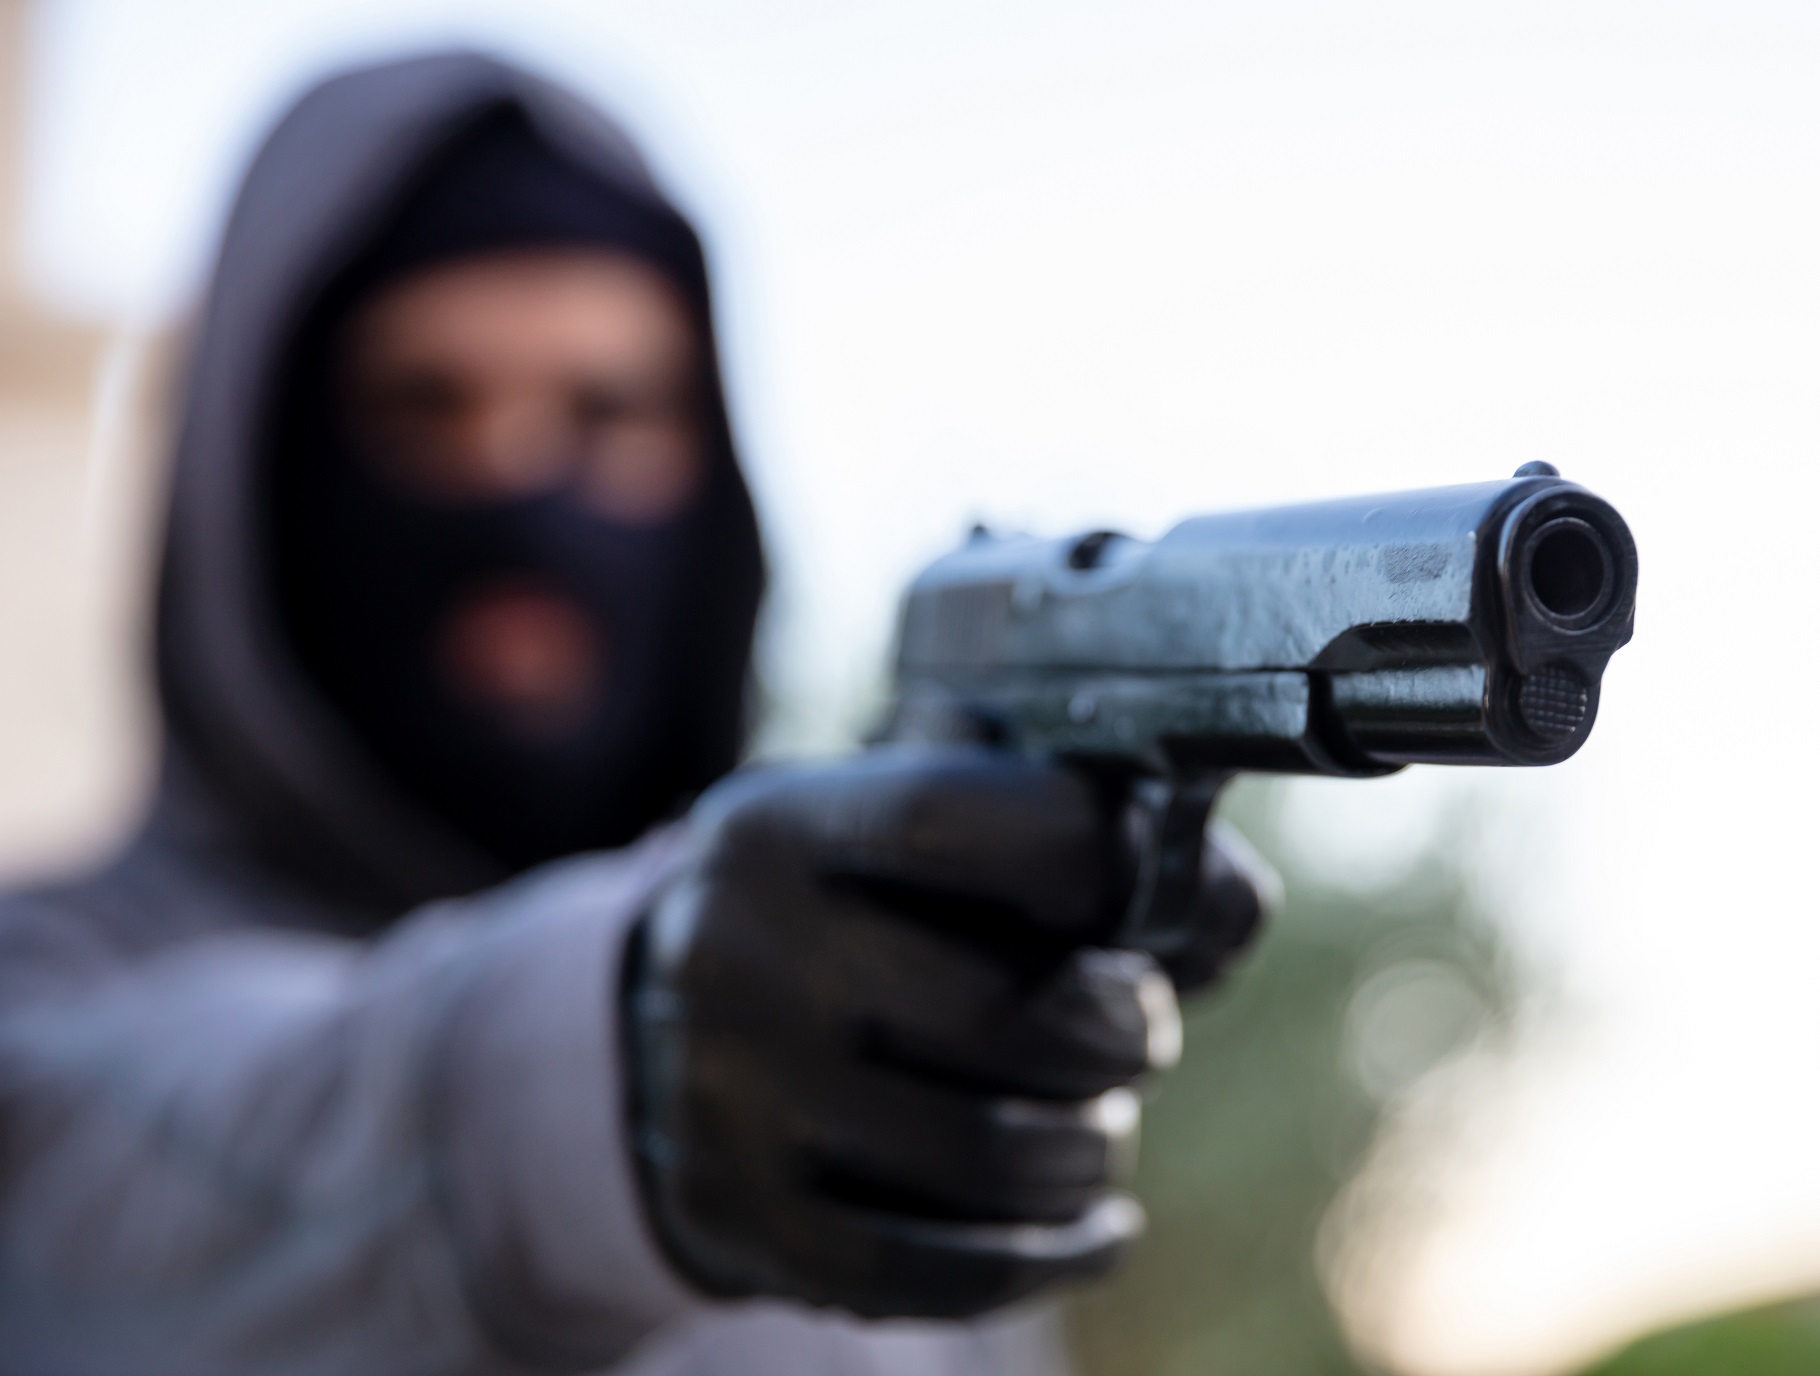 Robbery at gunpoint